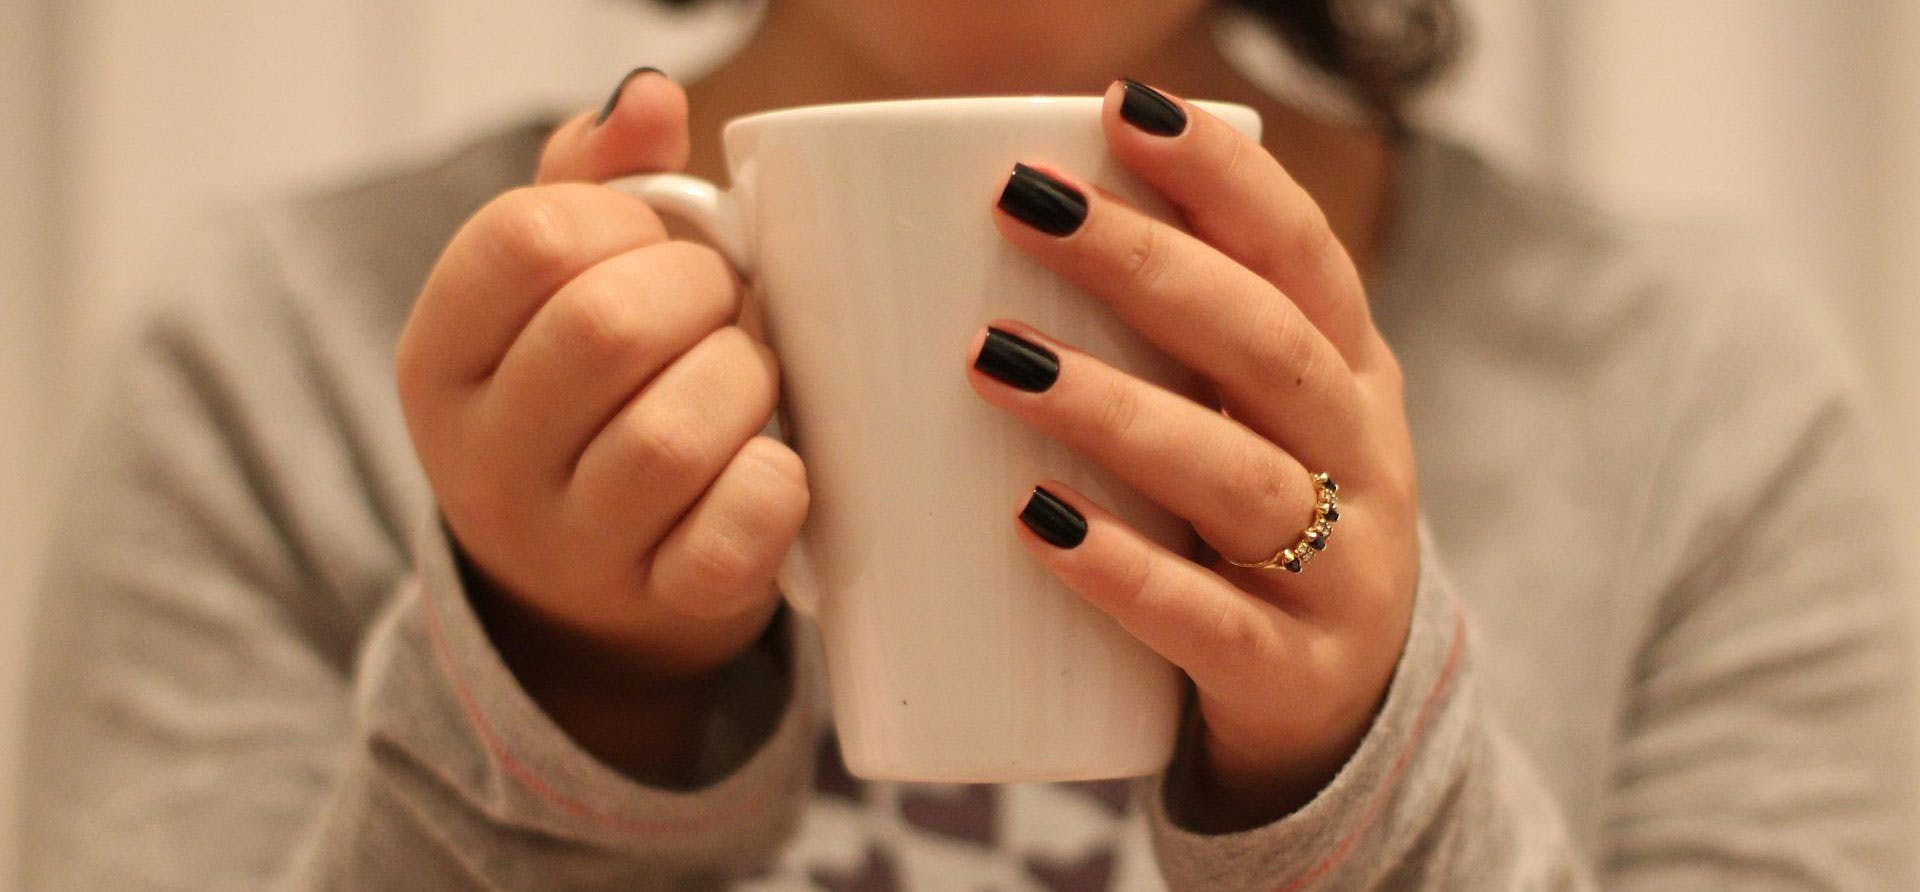 A close up of a hands holding a white mug of tea.